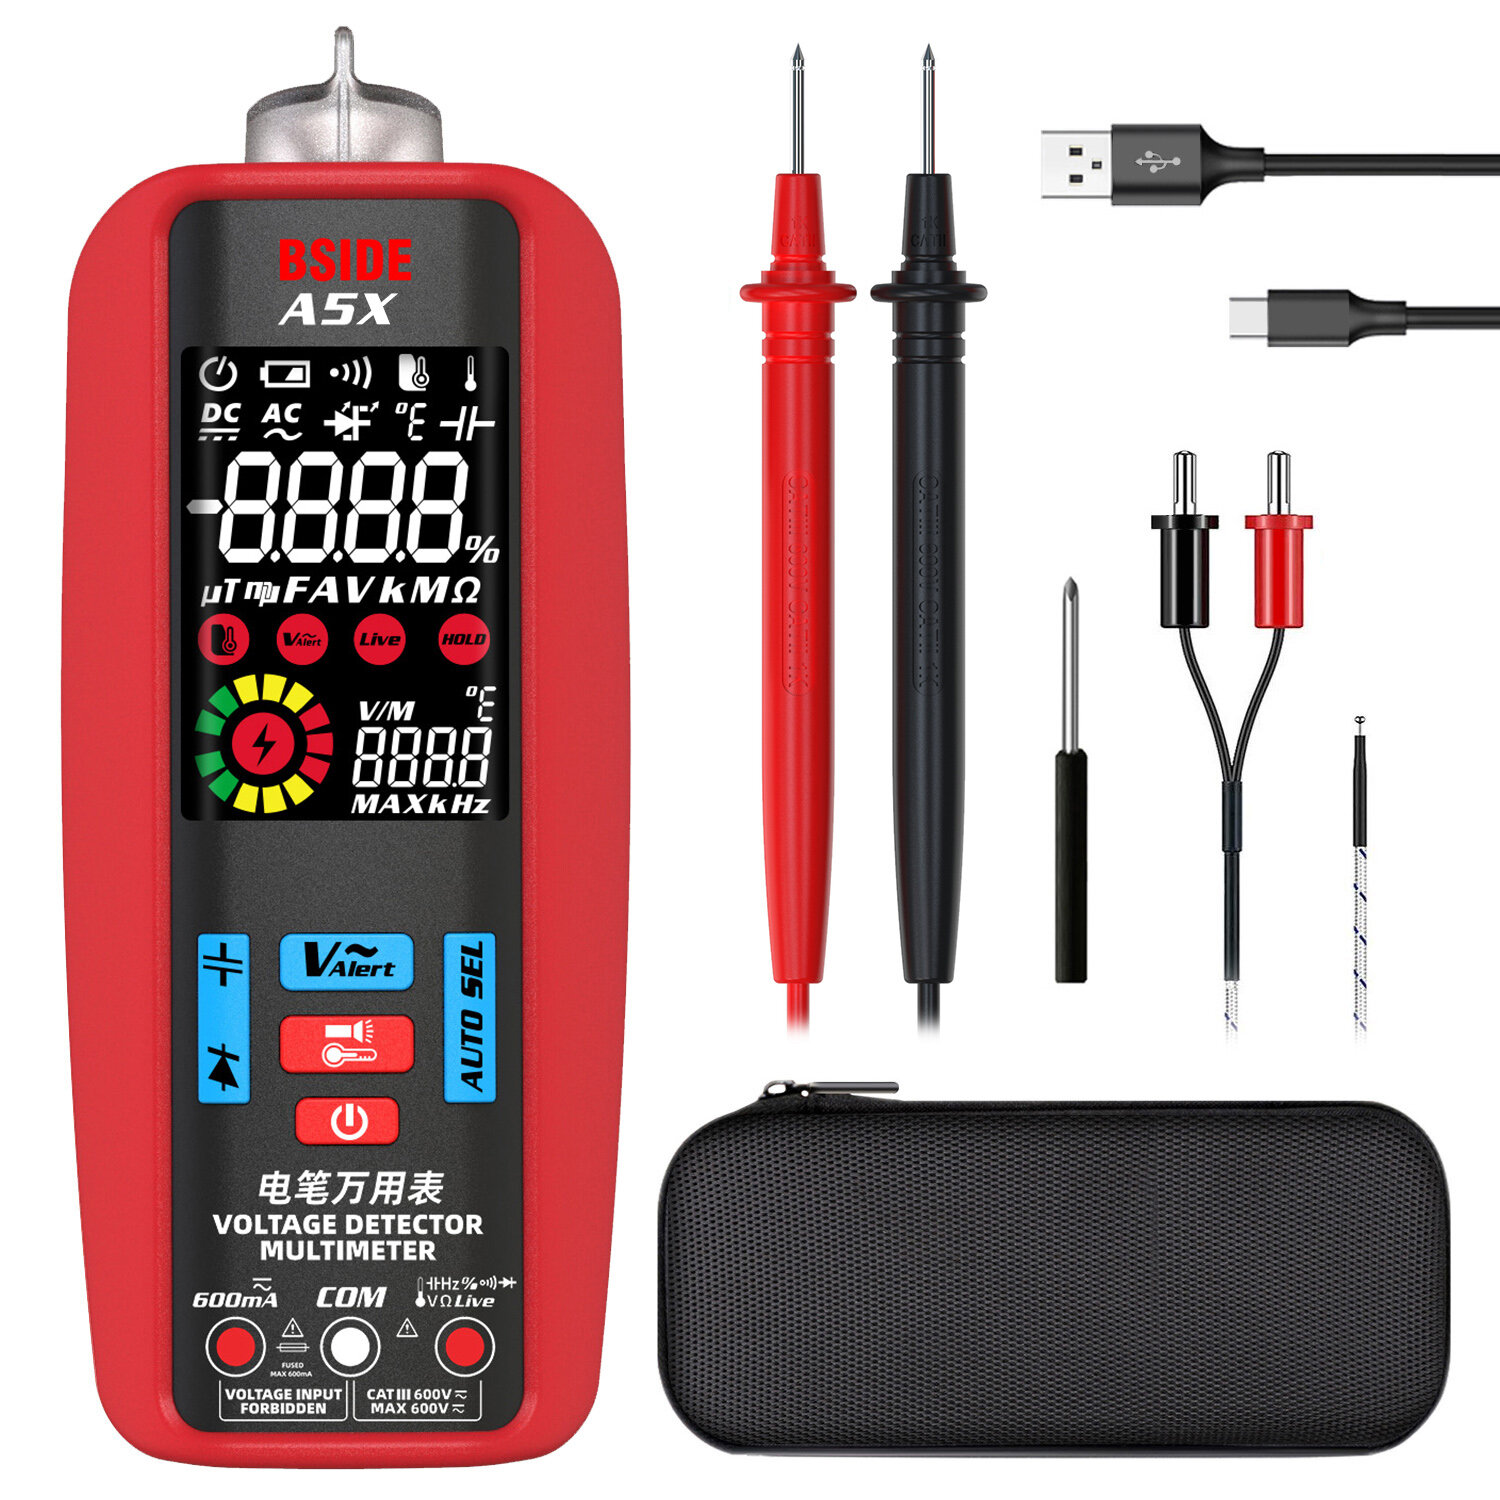 BSIDE A5X Digital Smart Multimeter Measurement Test Meter Temp Multitester 3-Results Display Current Tester VFC V-Alert